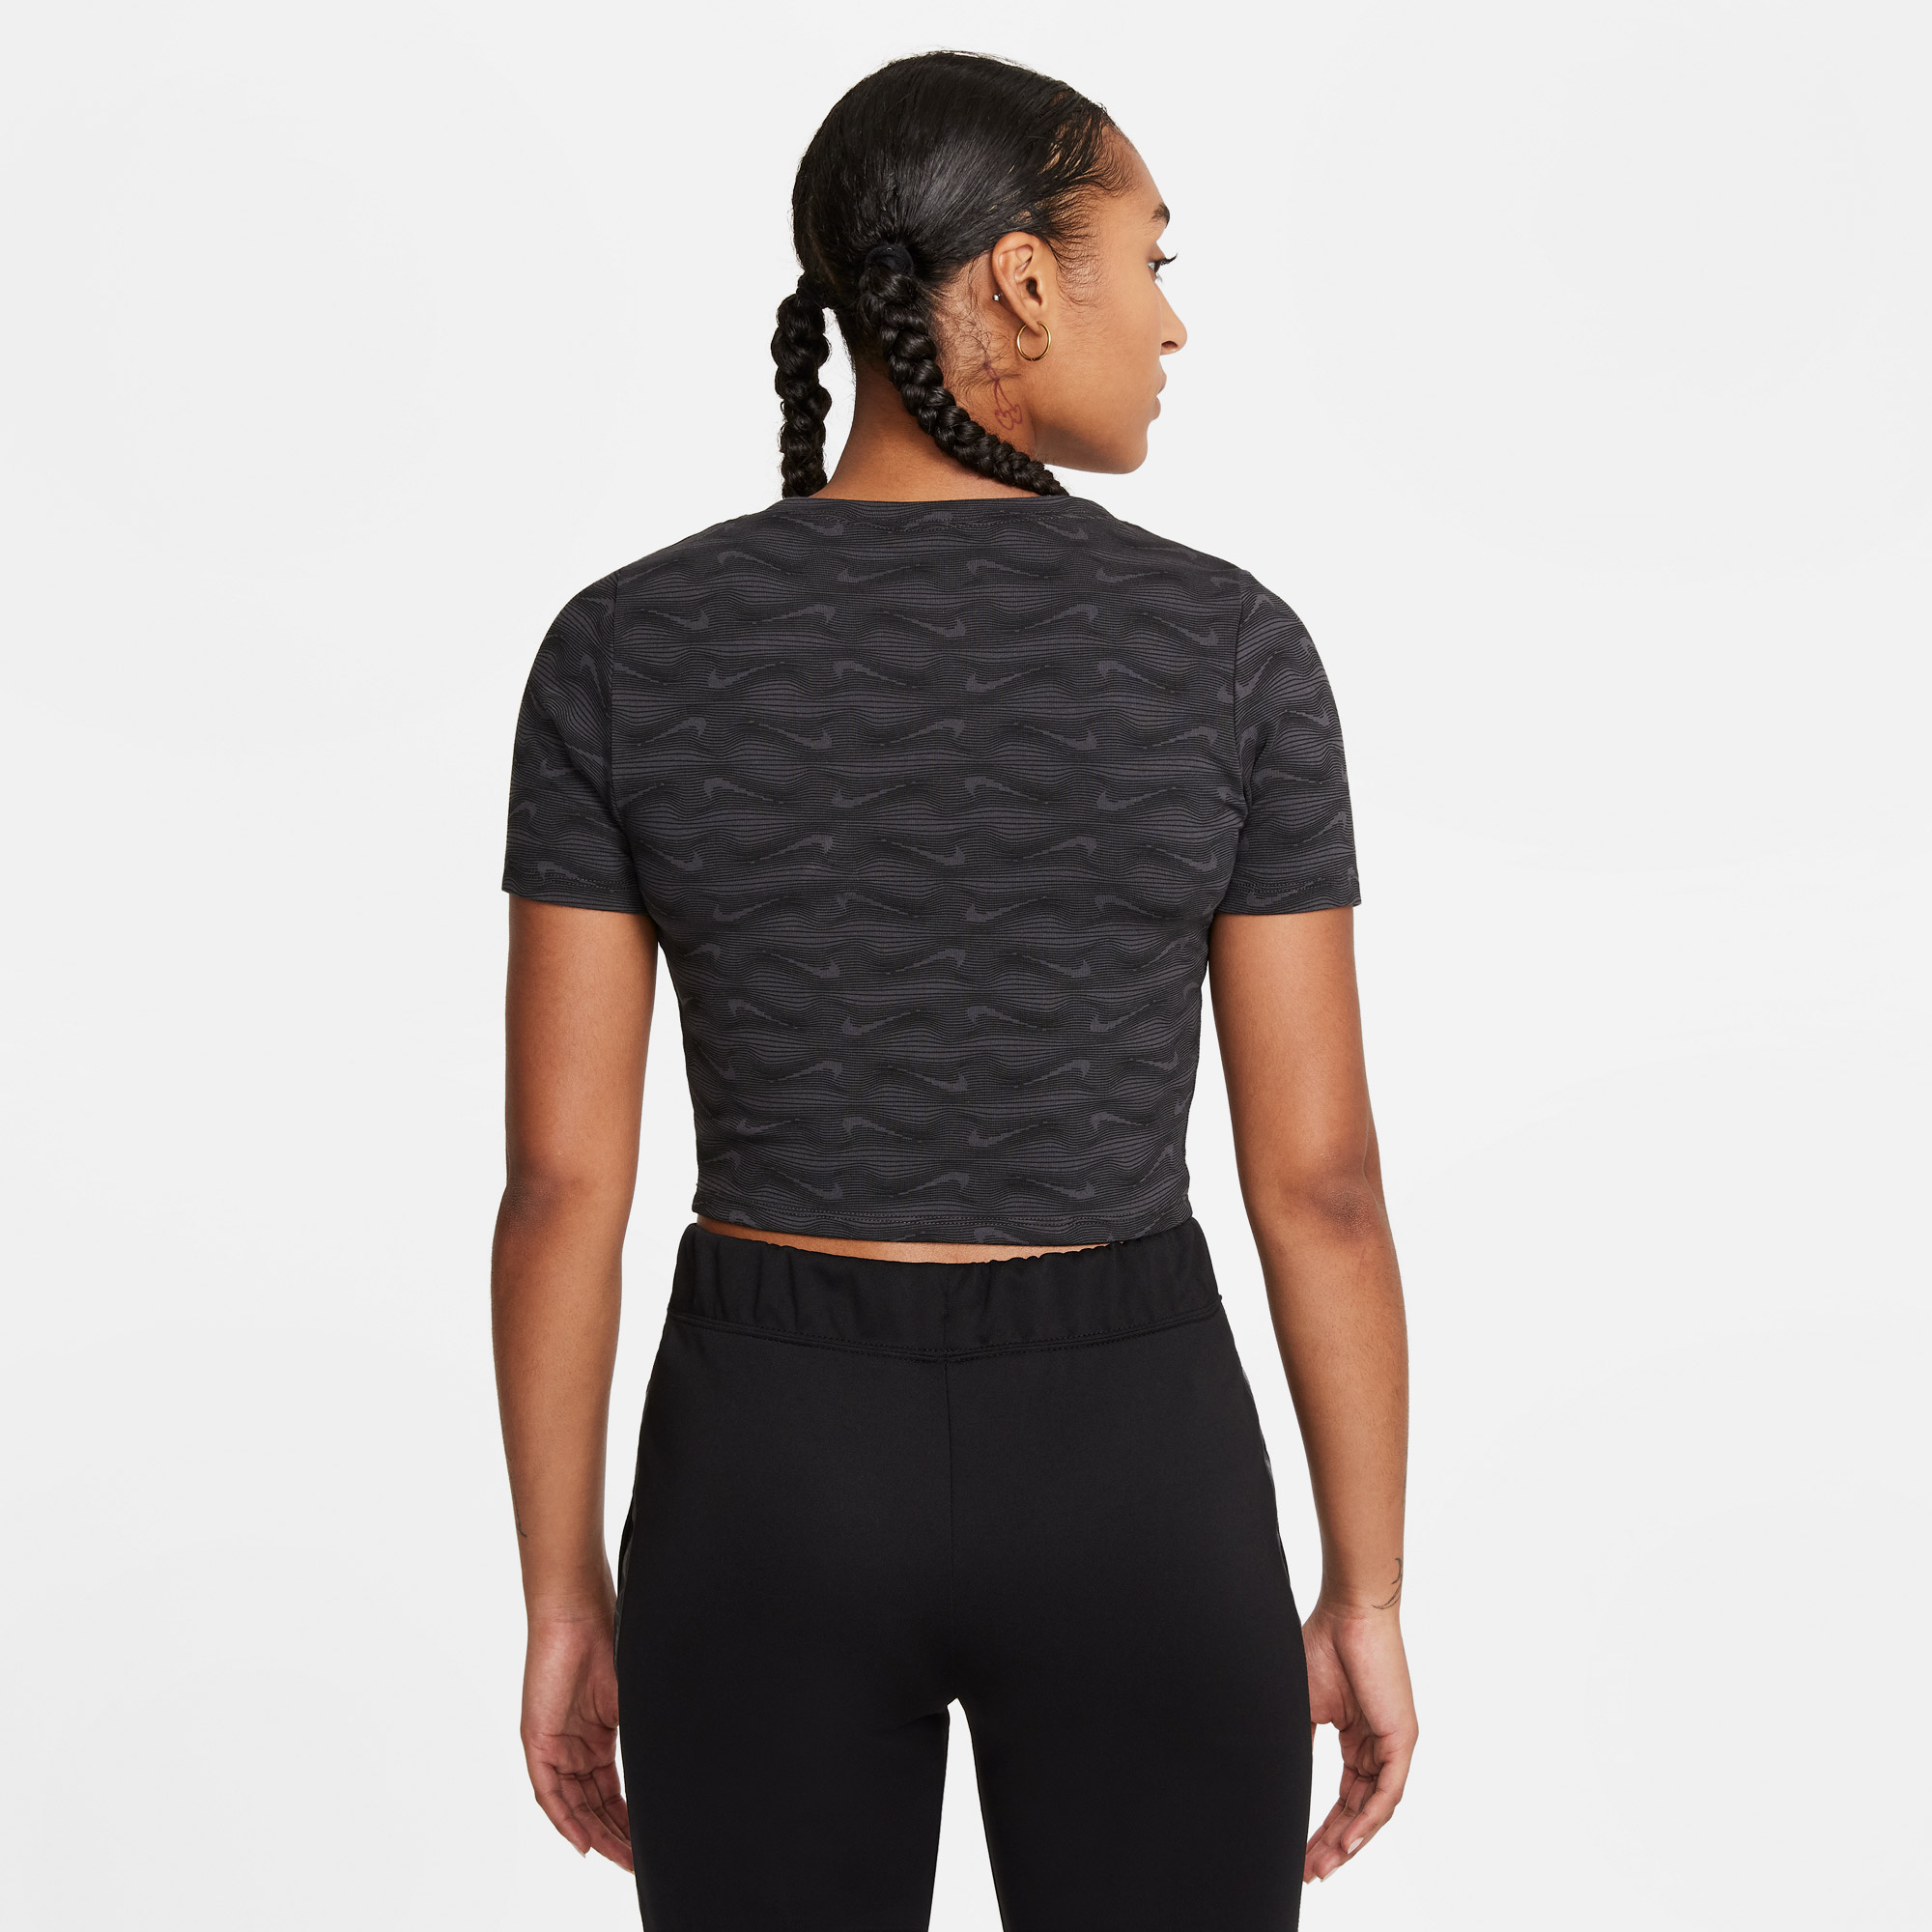 Nike Air Kadın Siyah T-shirt